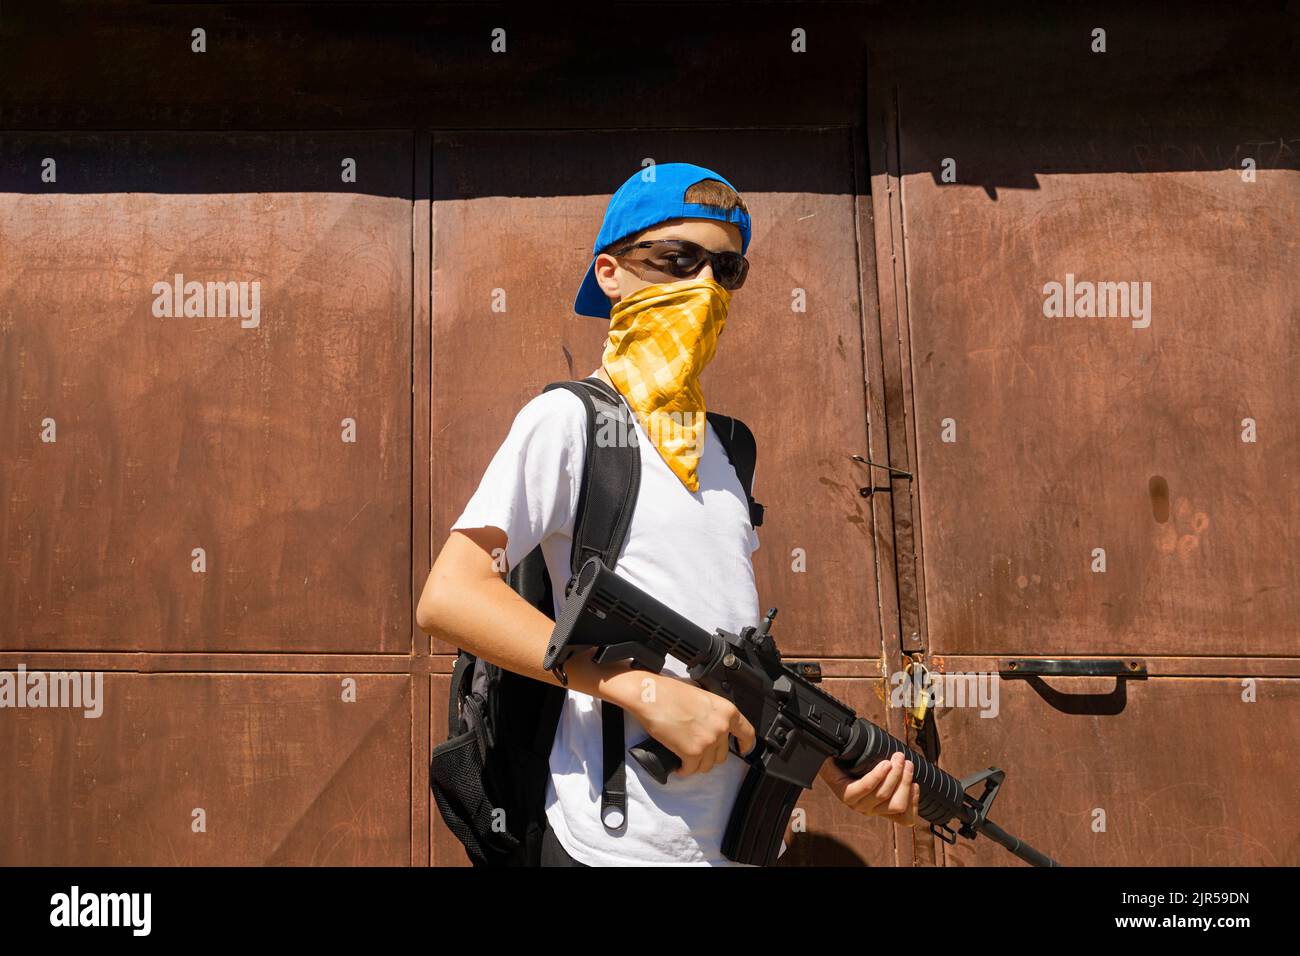 Un homme mineur armé avec un bandana et des lunettes de soleil Banque D'Images